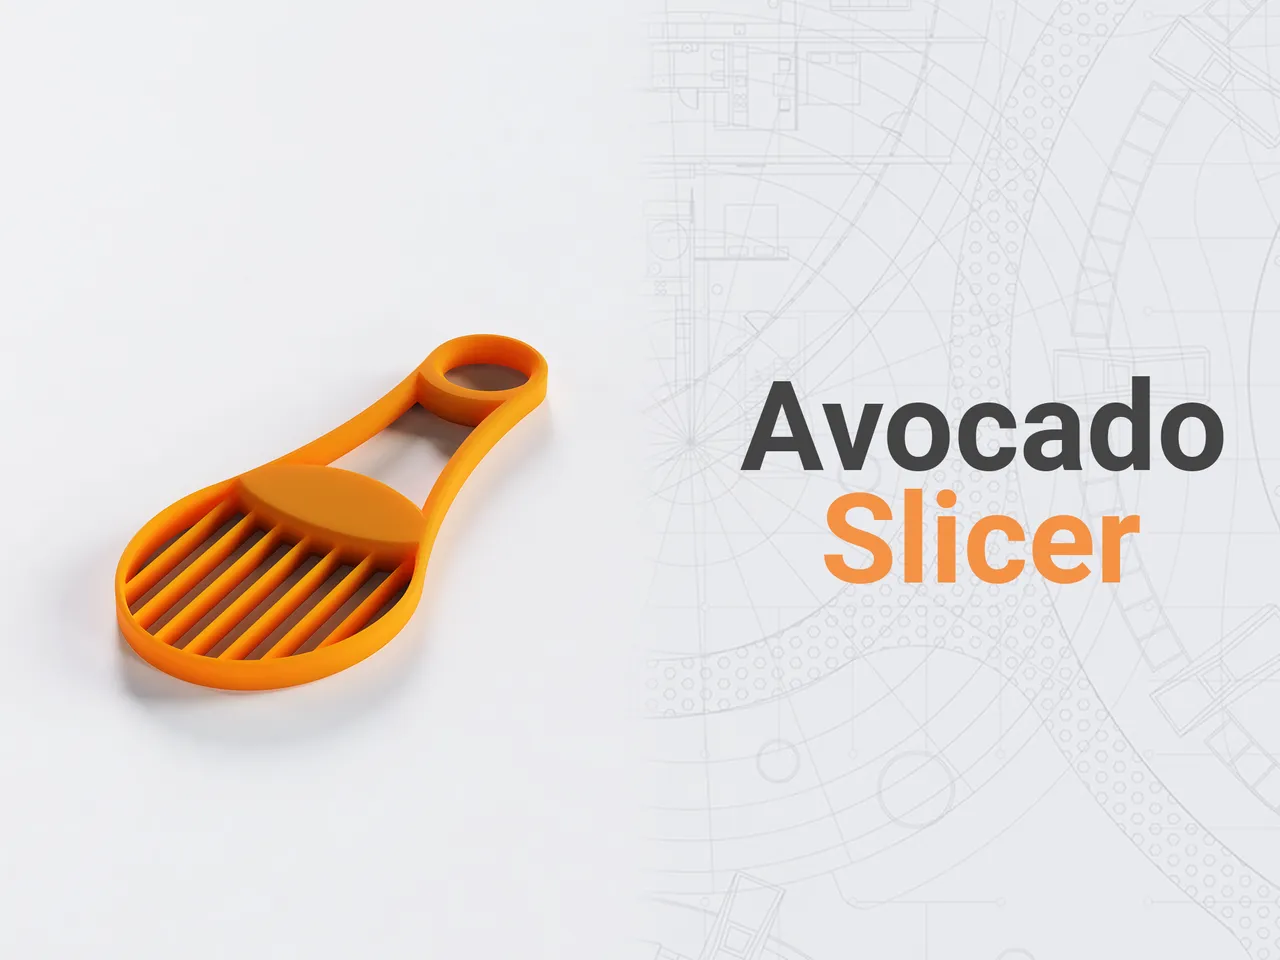 Avocado Slicer 3d model